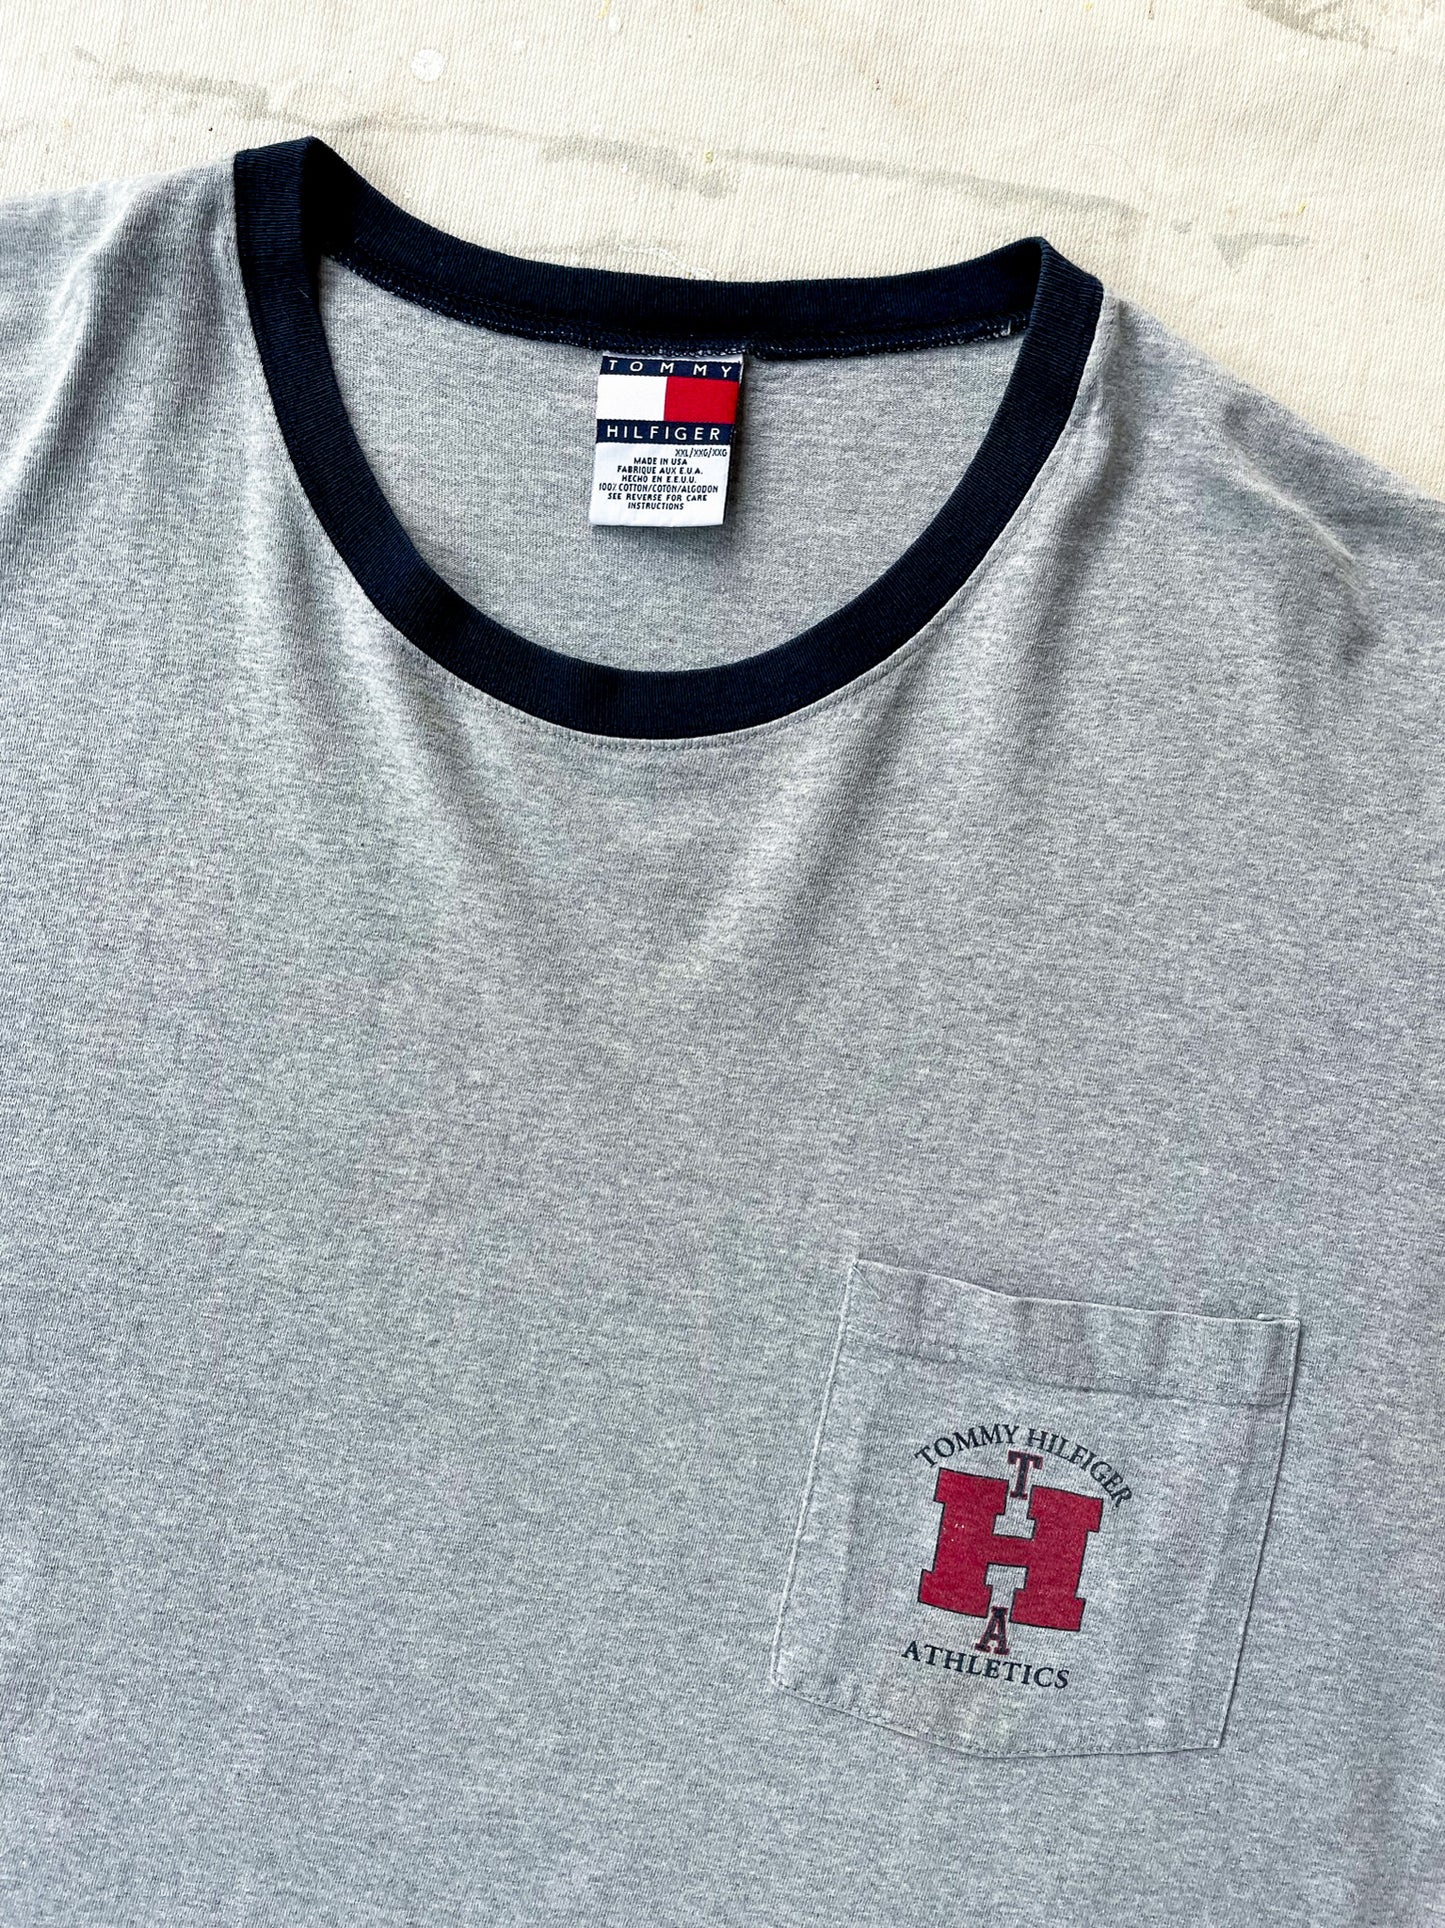 Tommy Hilfiger T-Shirt—[XXL]